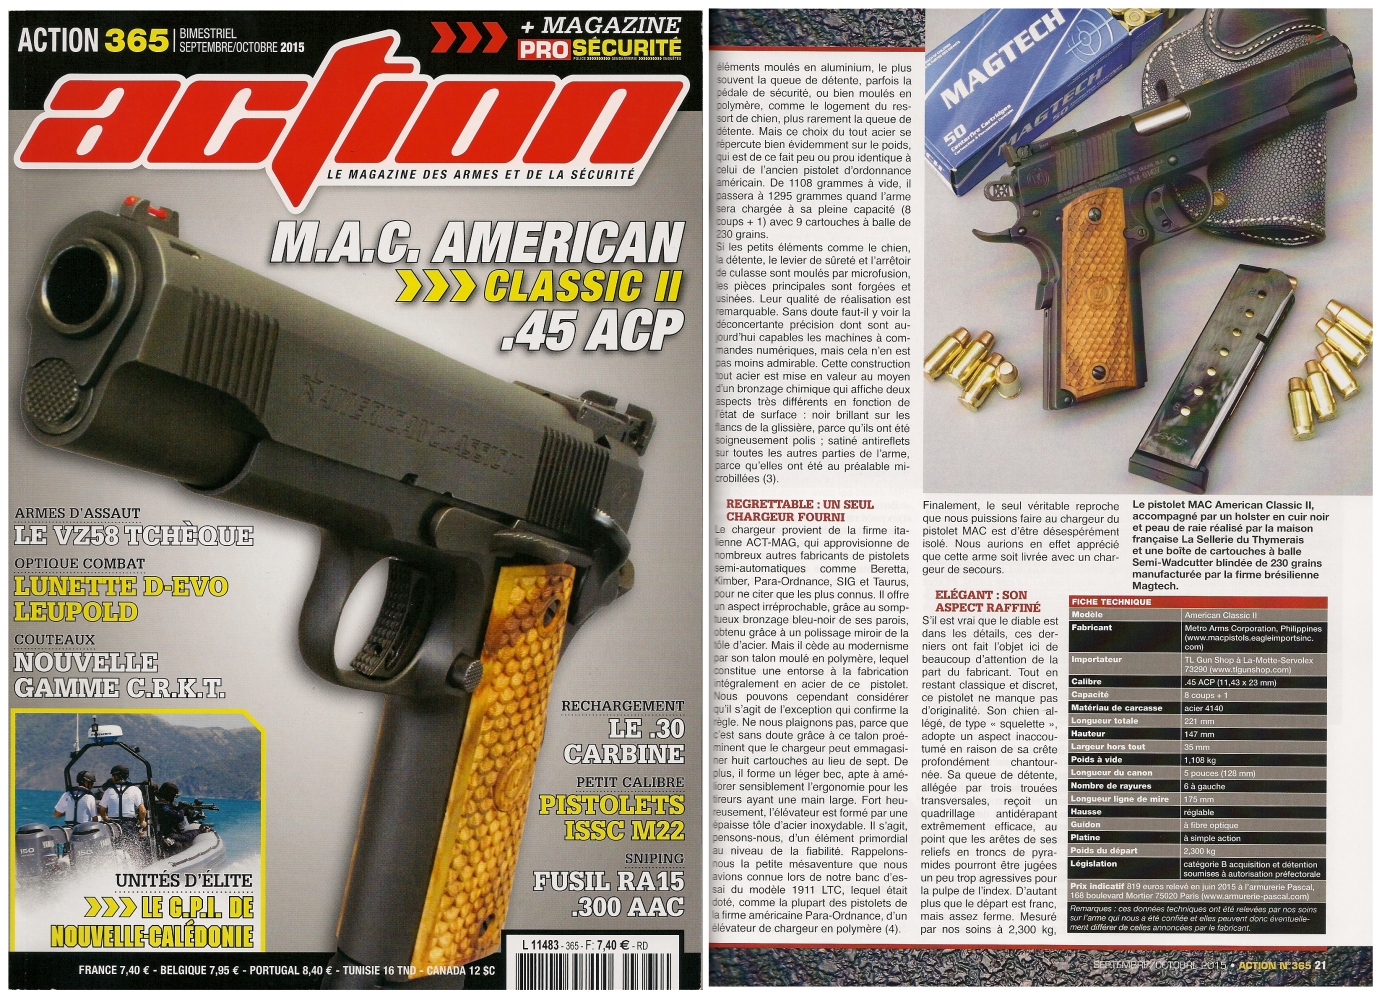 Le banc d'essai du pistolet MAC American Classic II a été publié sur 7 pages dans le magazine Action n°365 (septembre-octobre 2015).